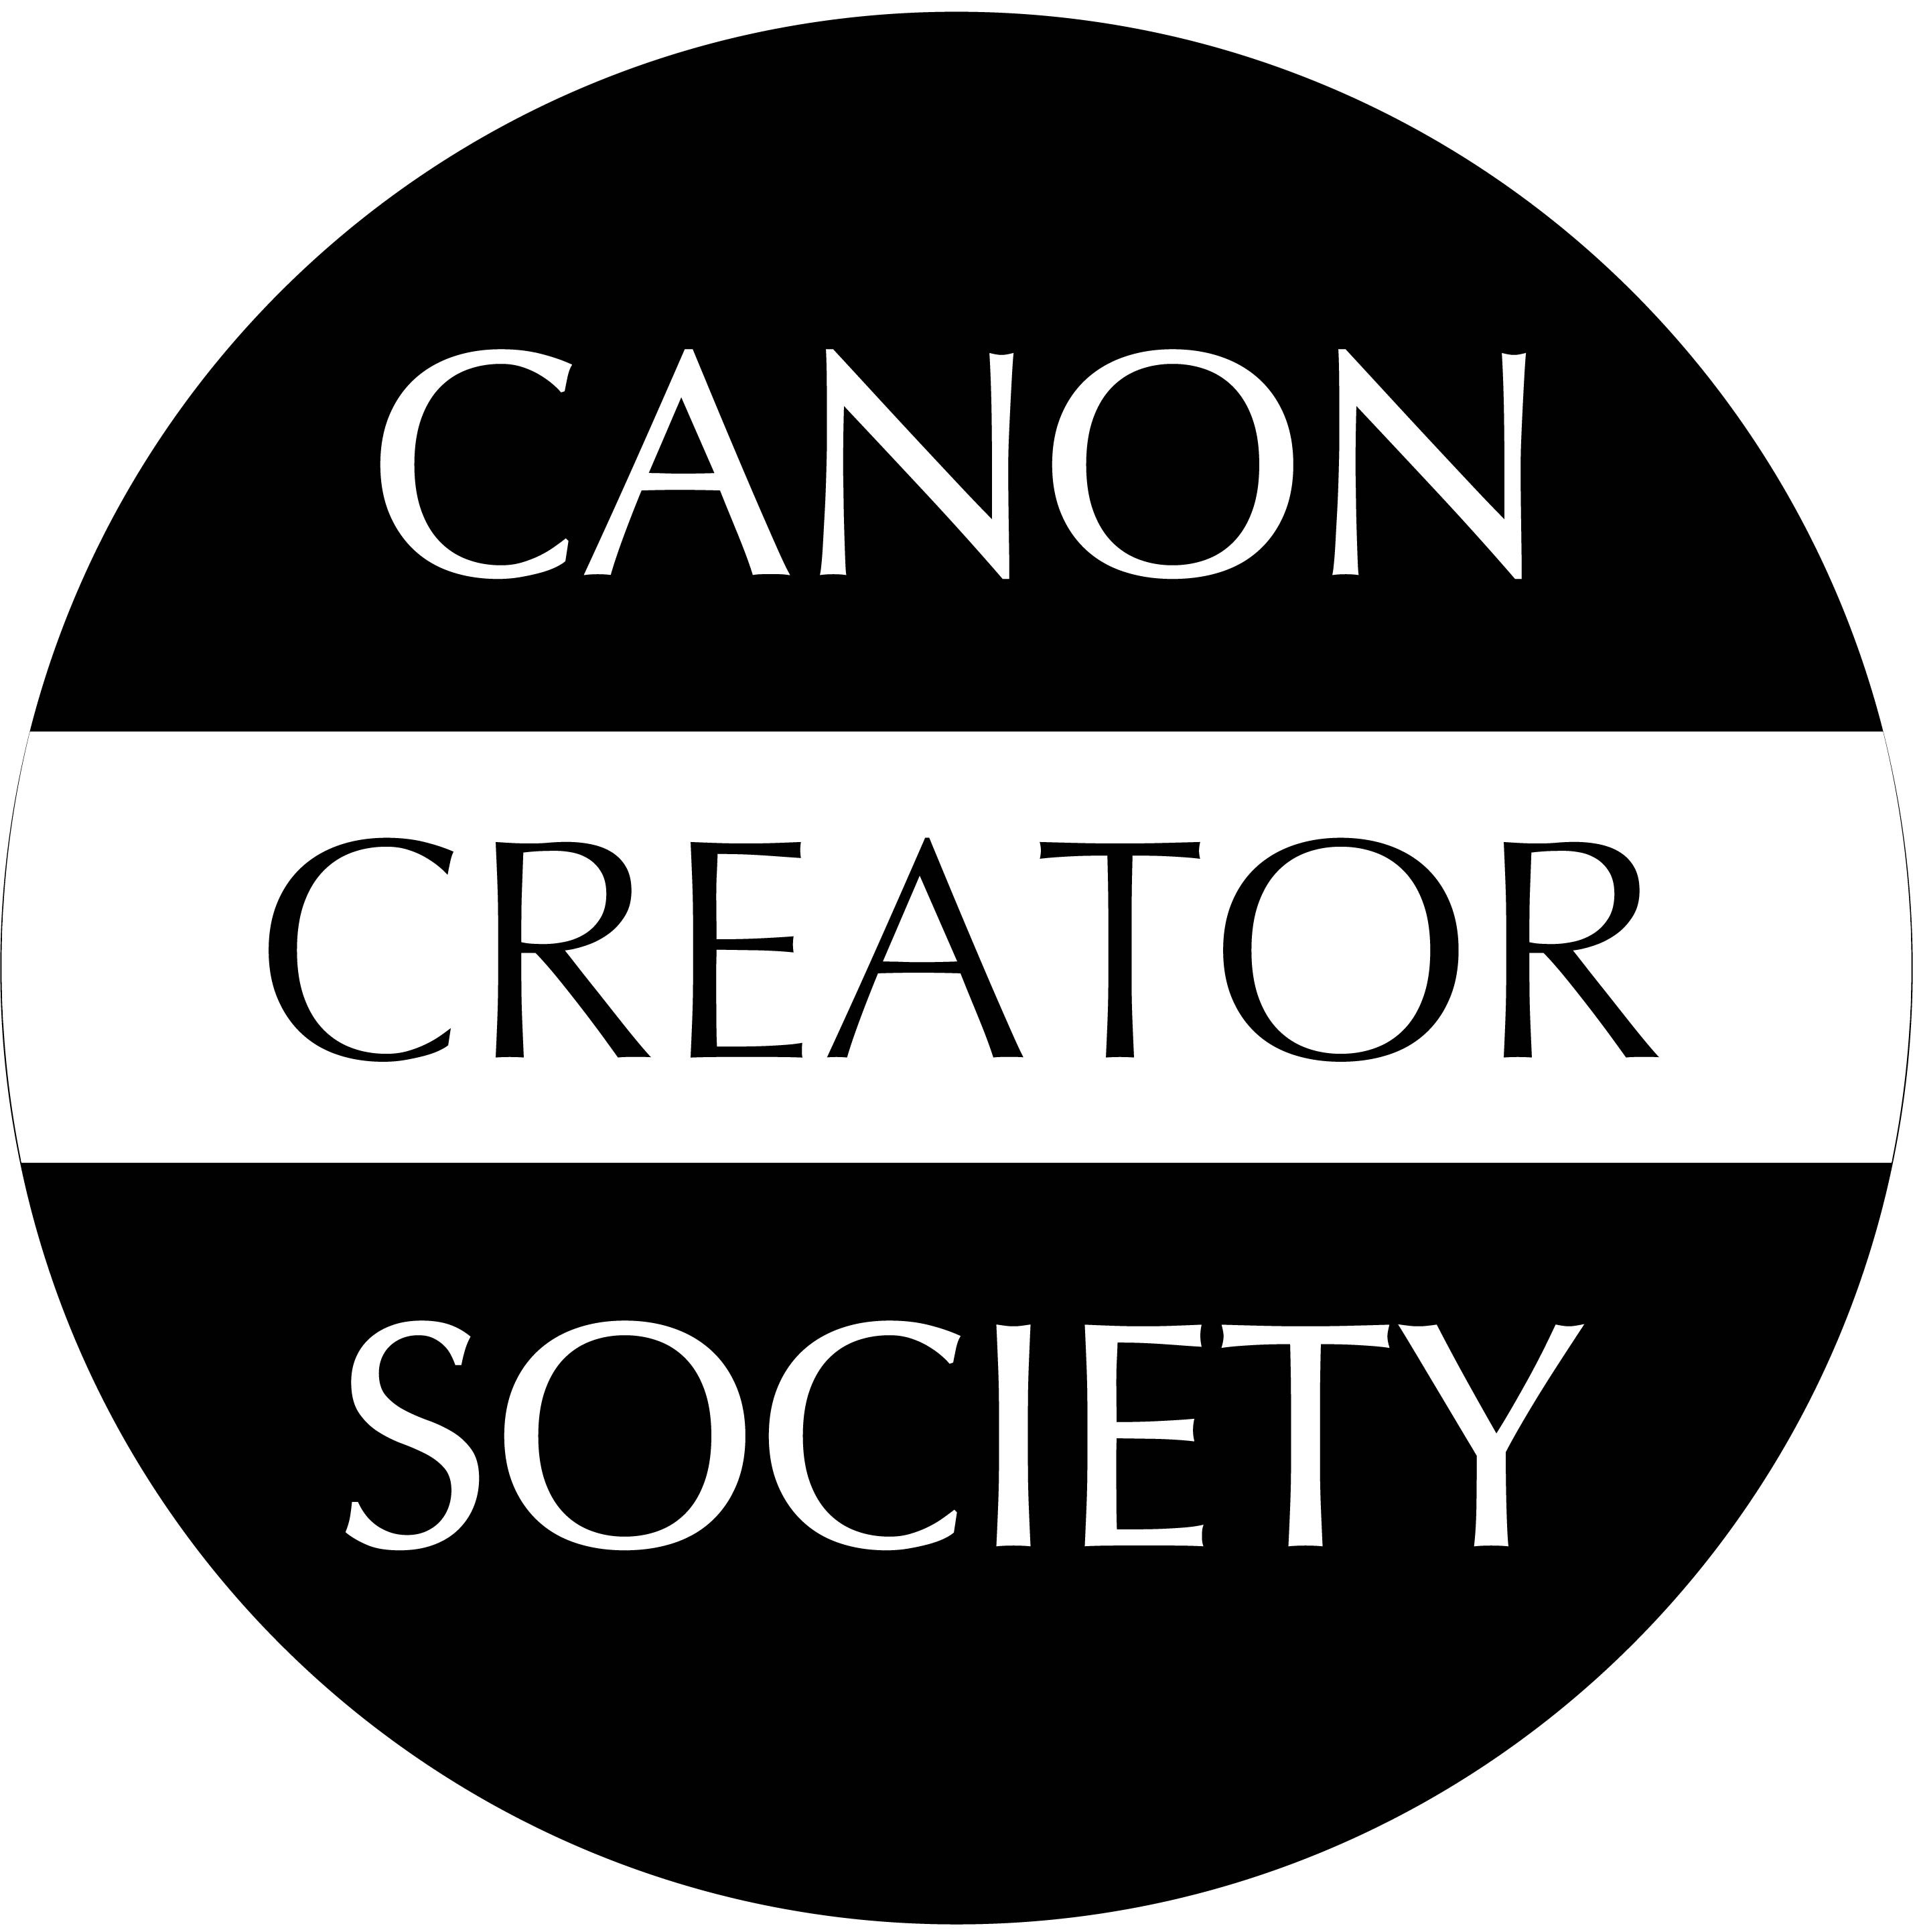 CanonCreatorSociety